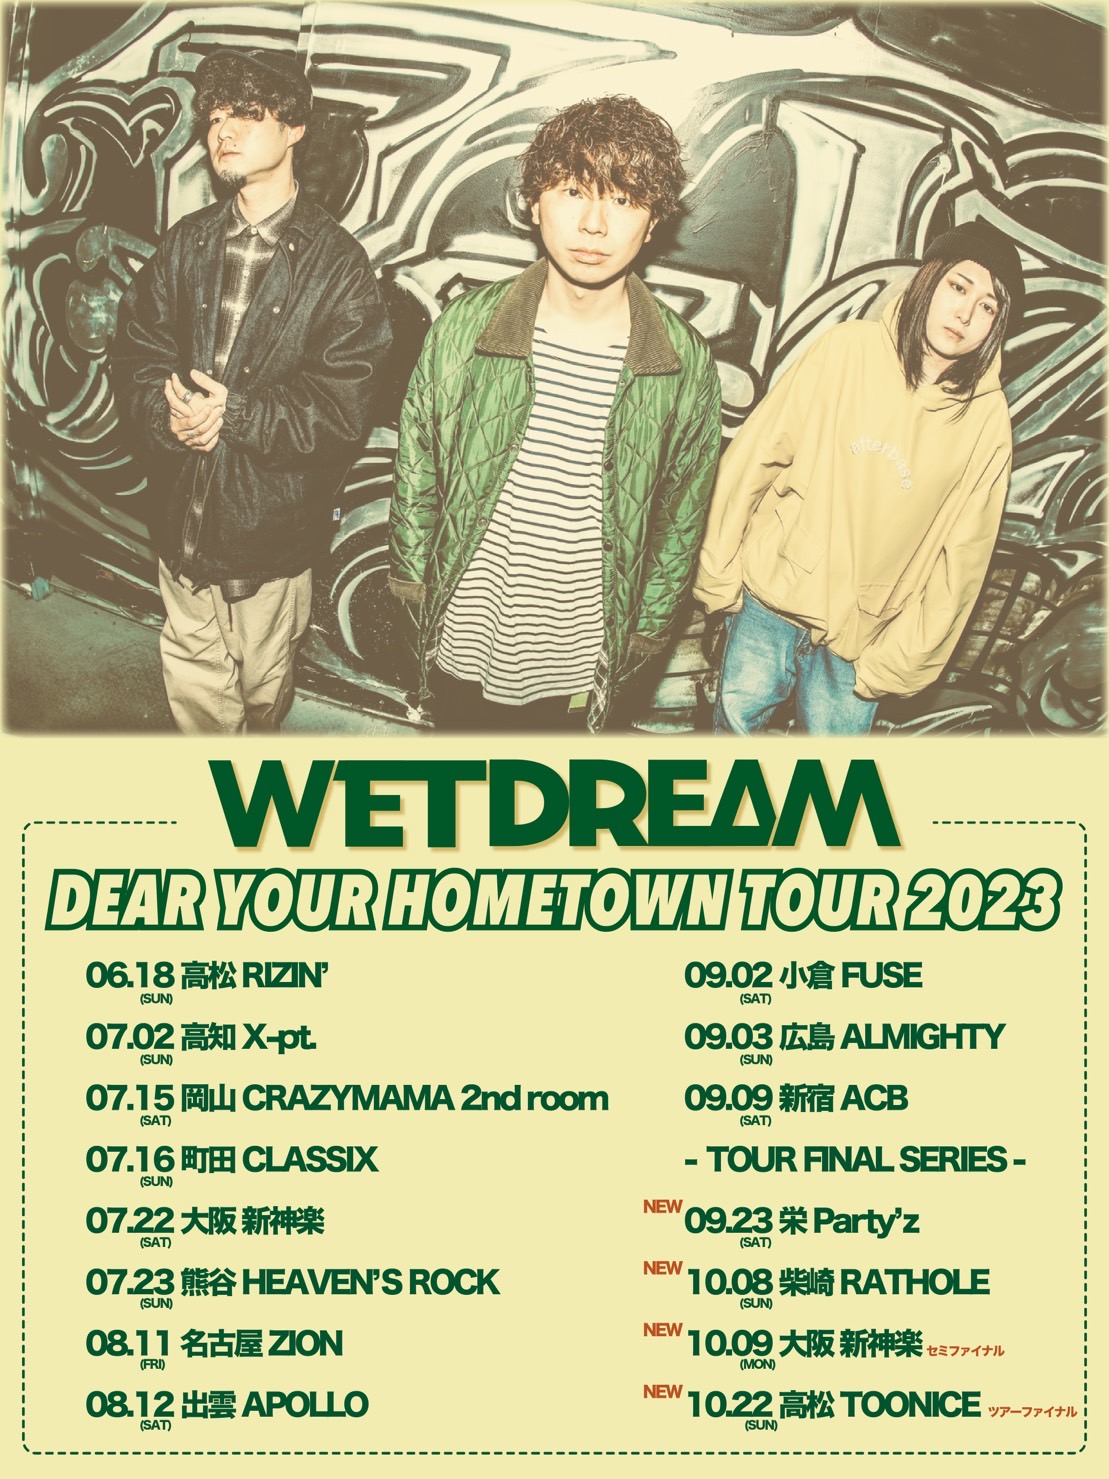 WETDREAM "DEAR YOUR HOMETOWN TOUR 2023"